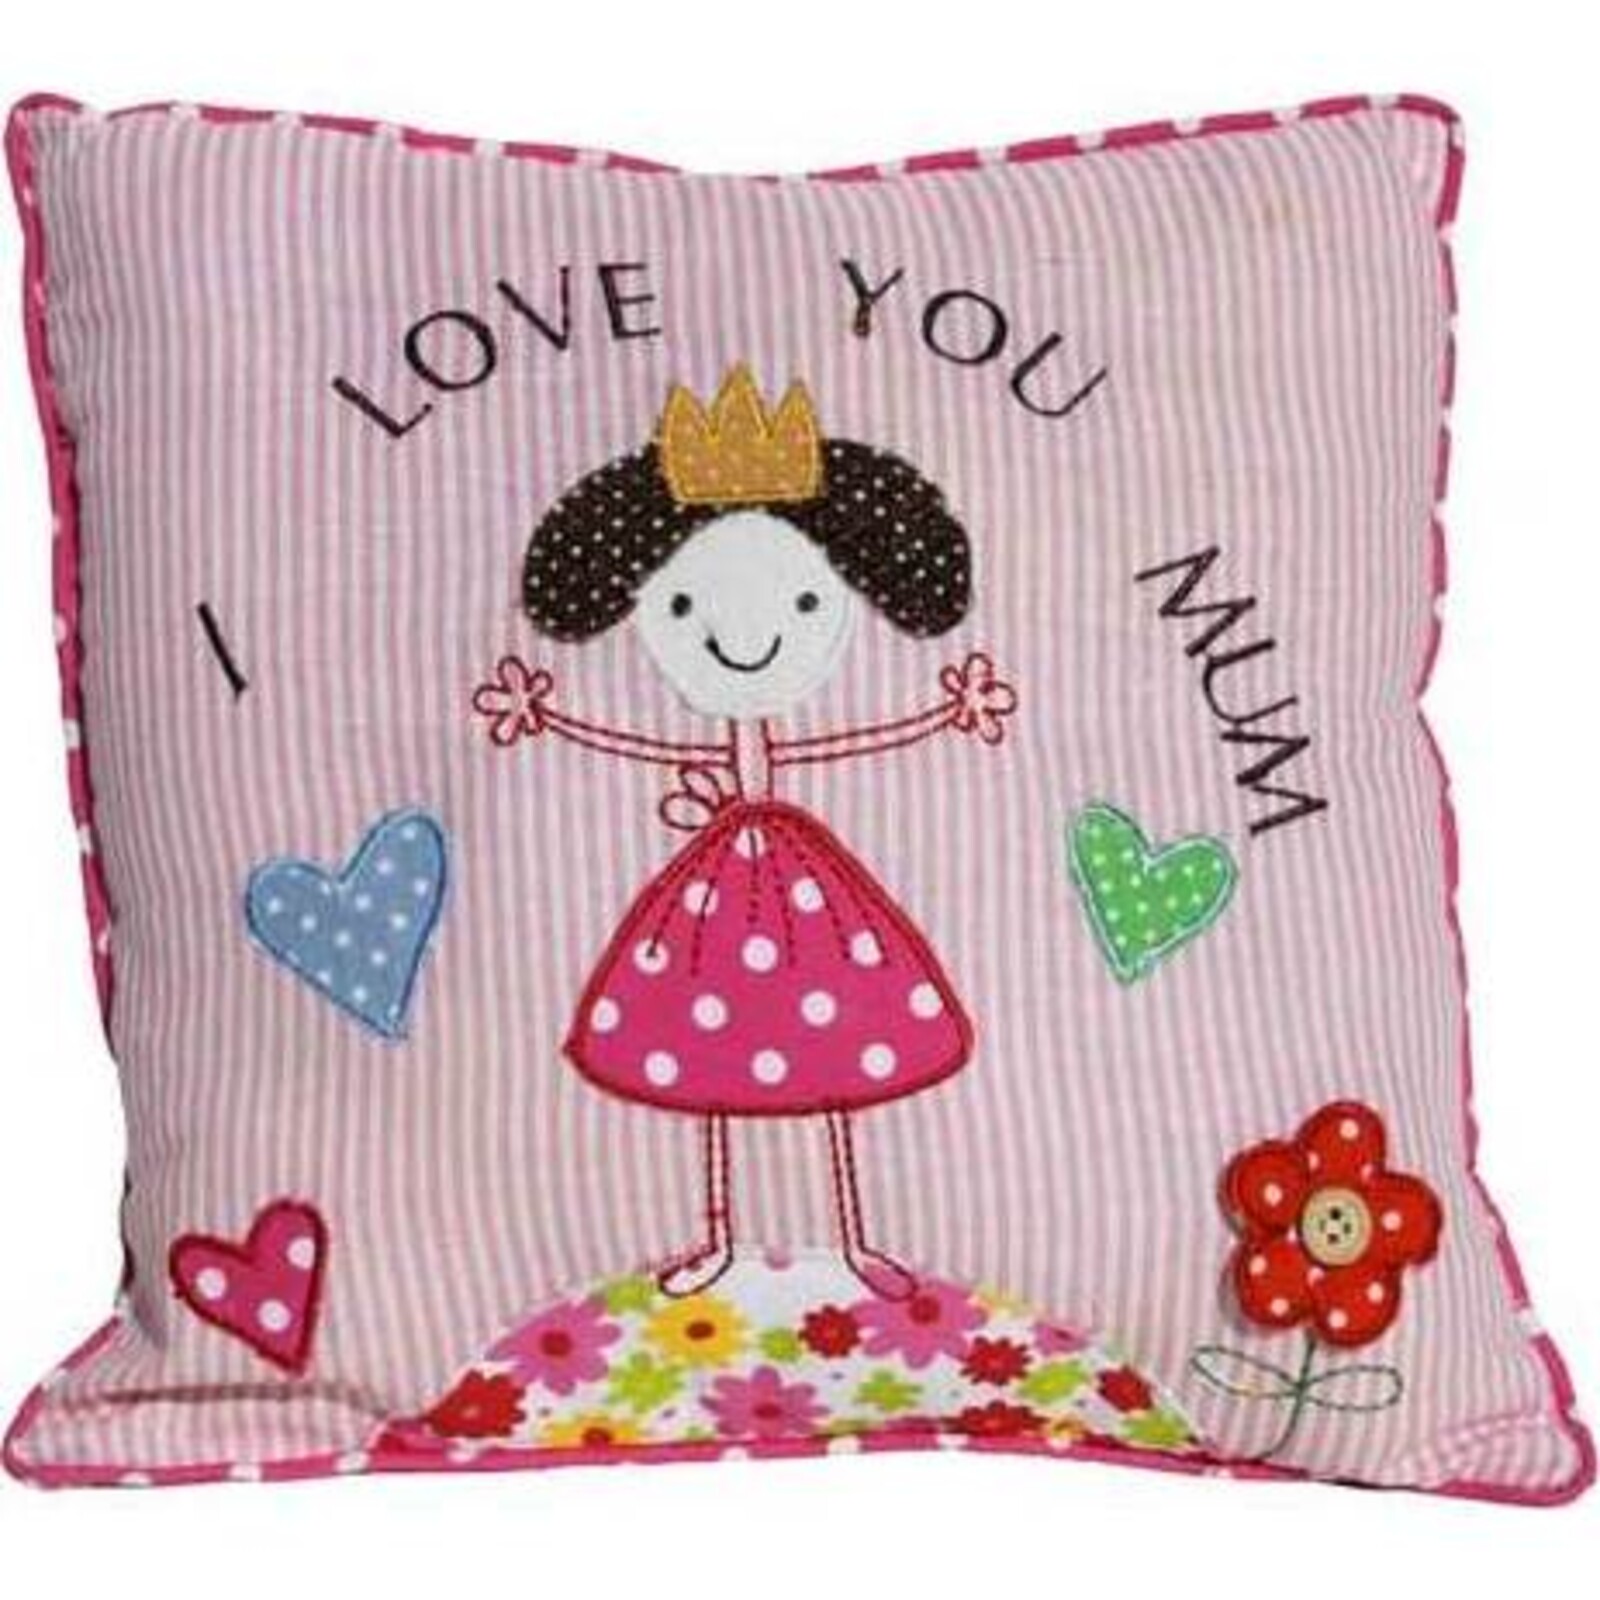 Cushion Love Mum